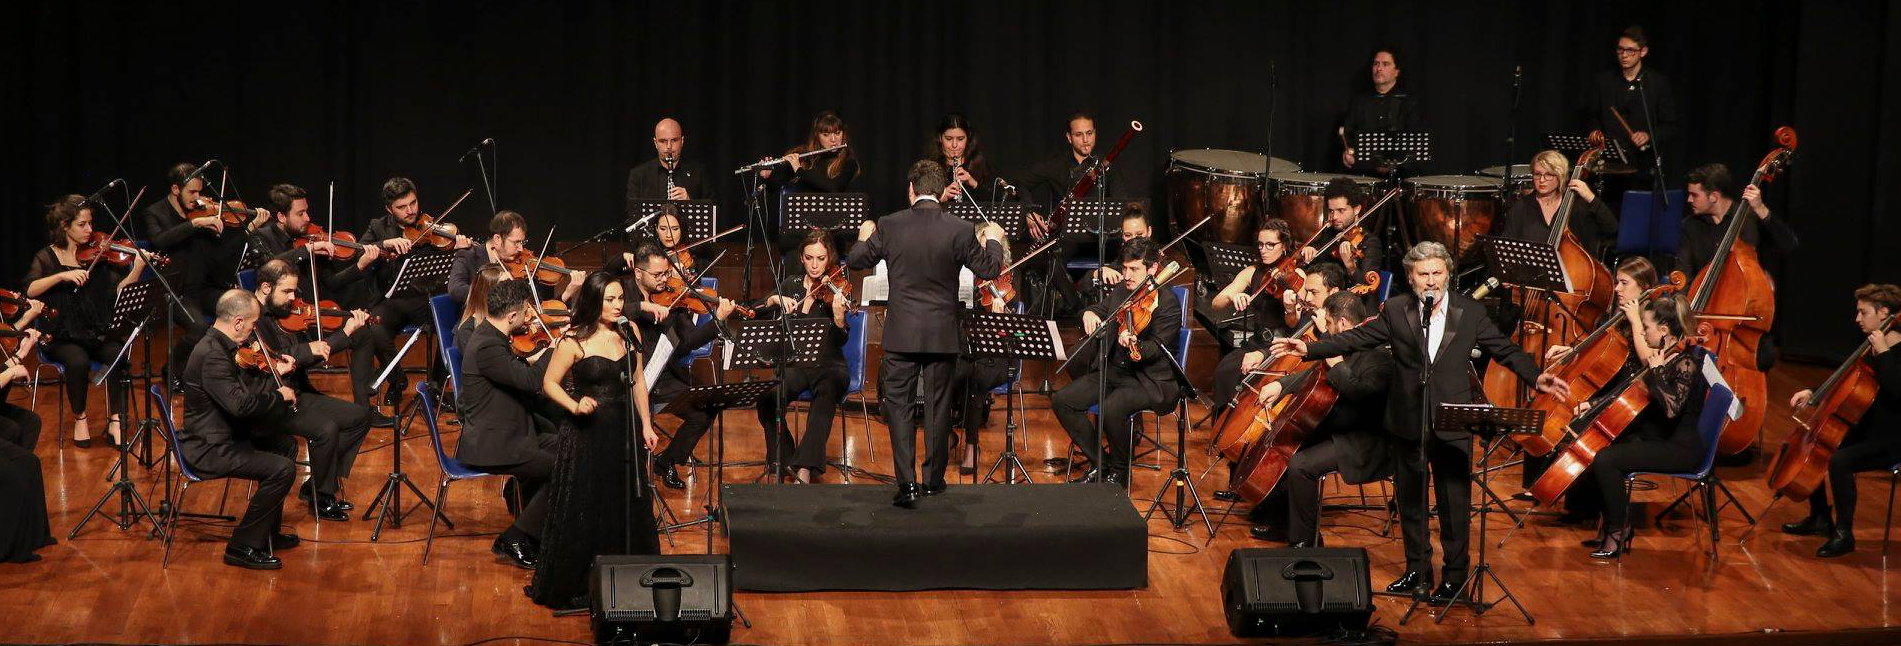 Hasan Yükselir - Soloist & Composer